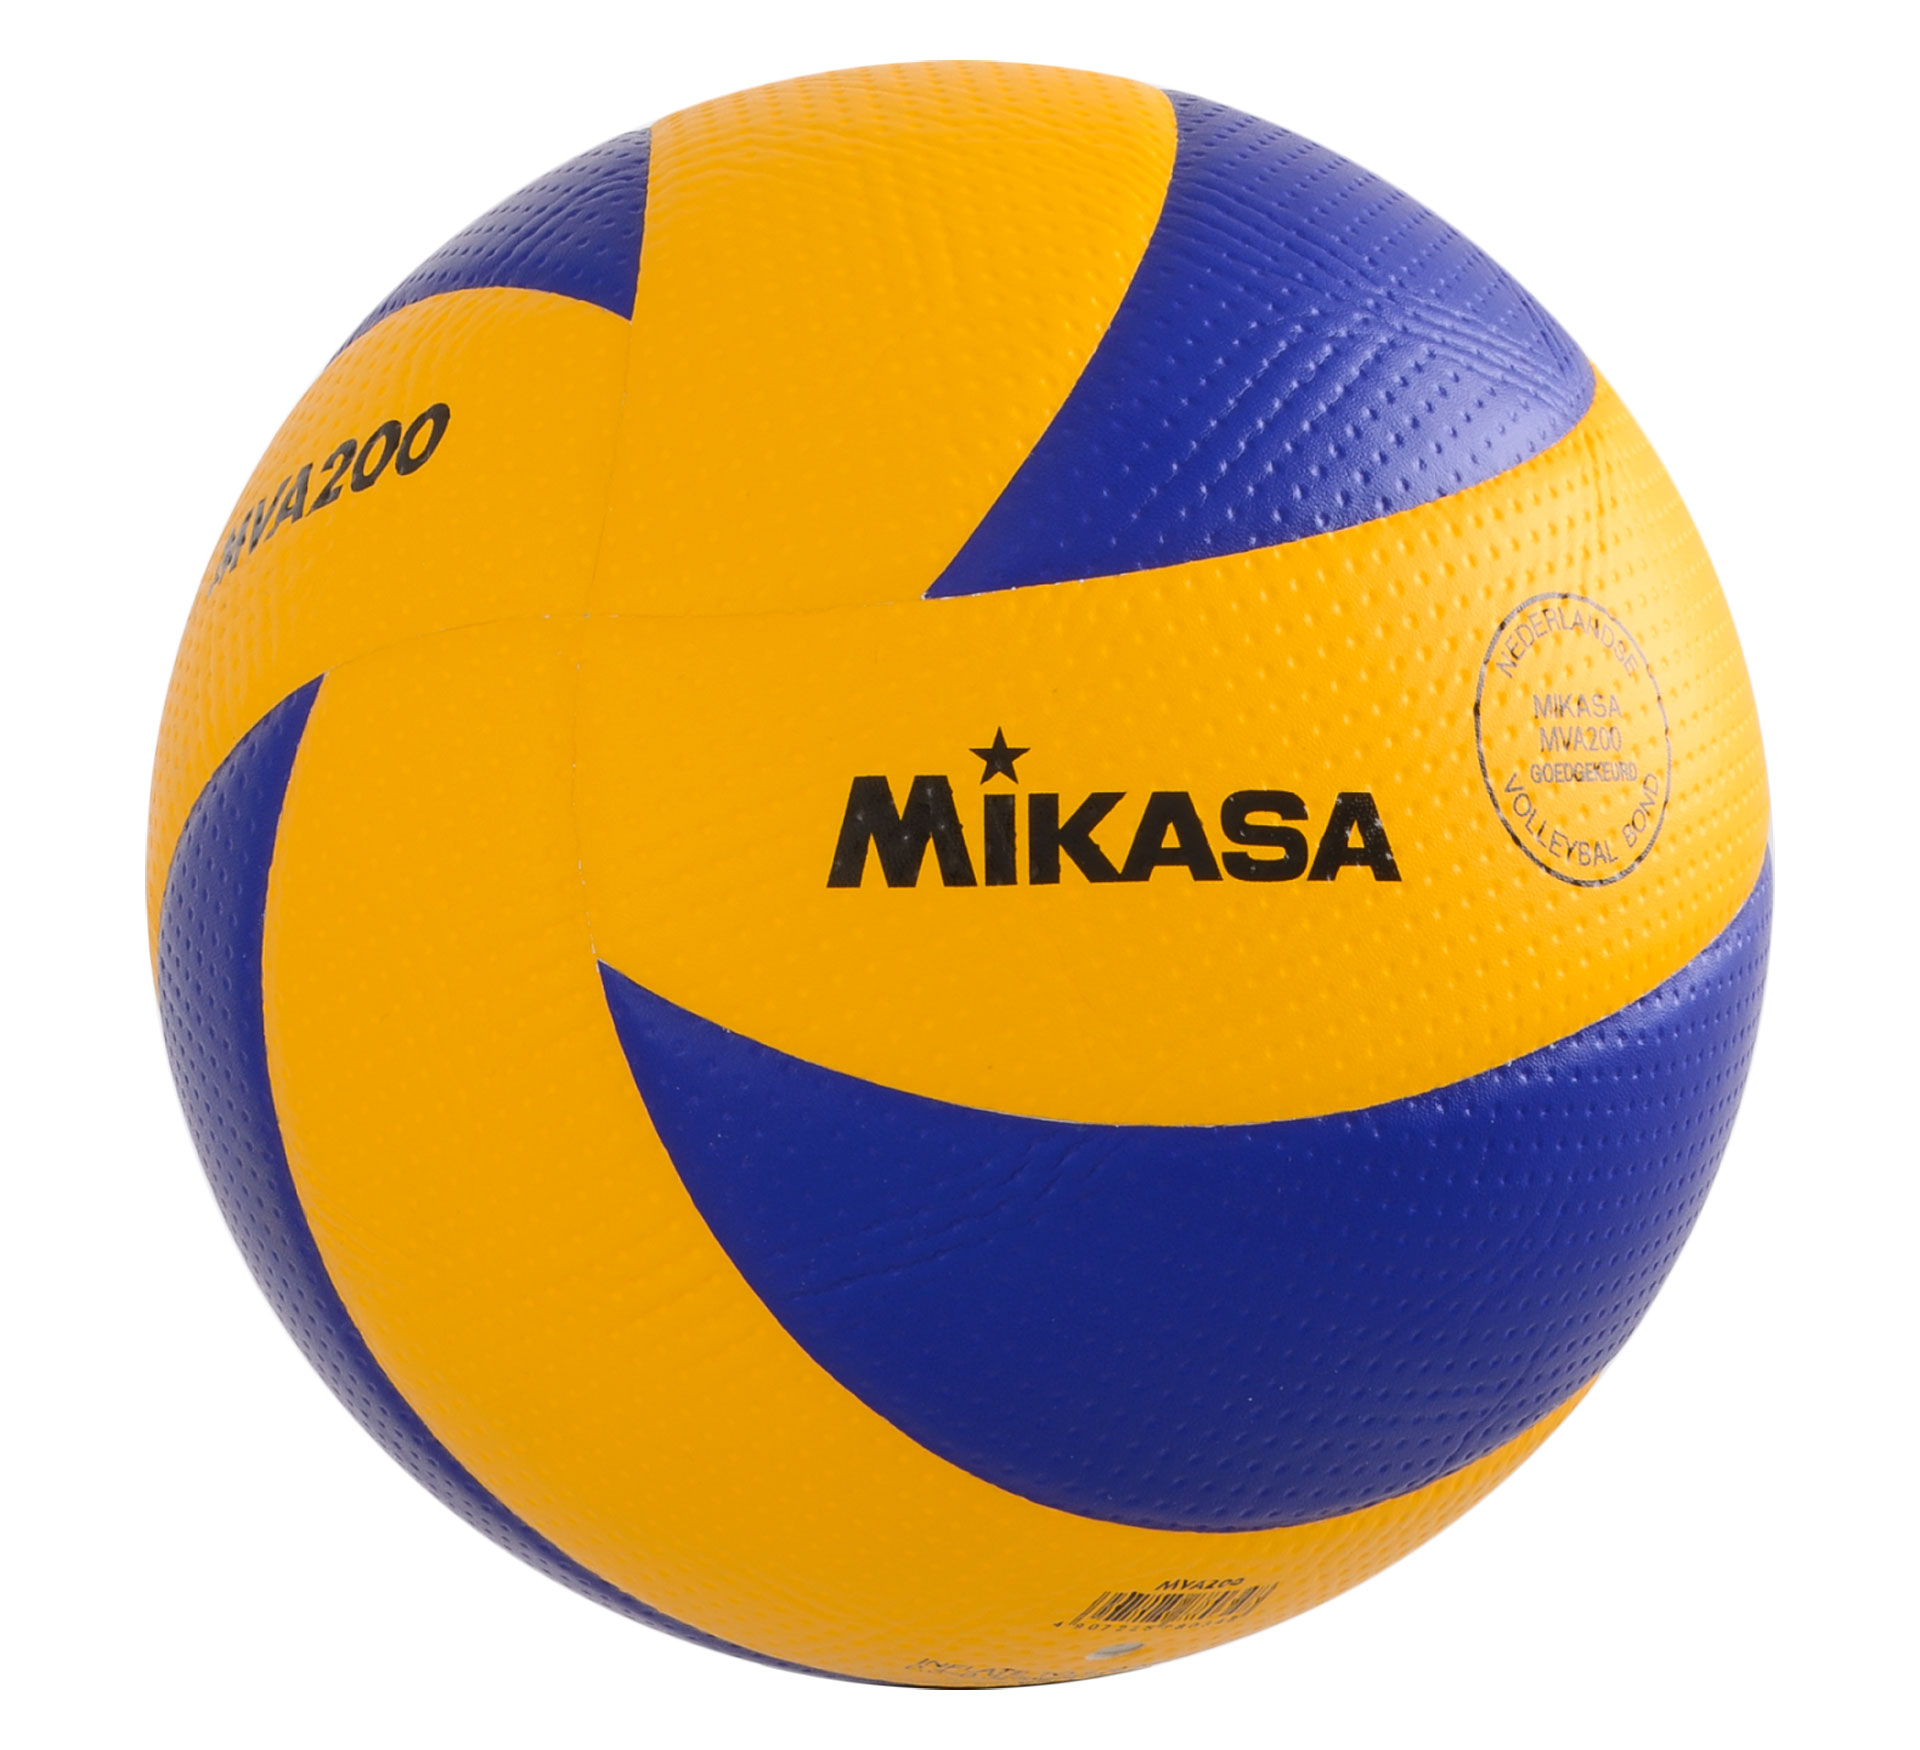 Mikasa MVA200 ballon de volleyball